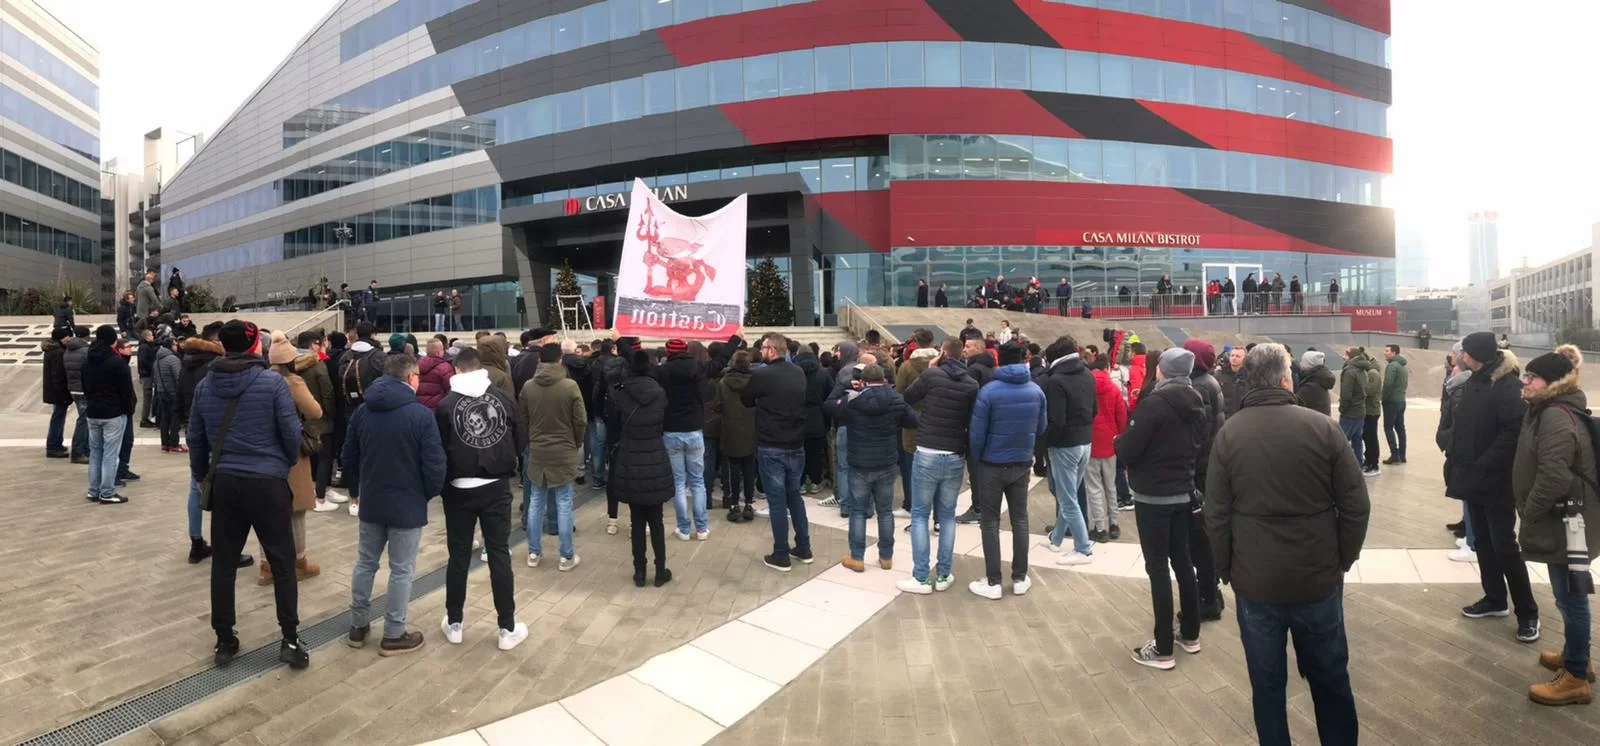 SM FOTO – Bagno di folla anche a Casa Milan in attesa di Ibrahimovic